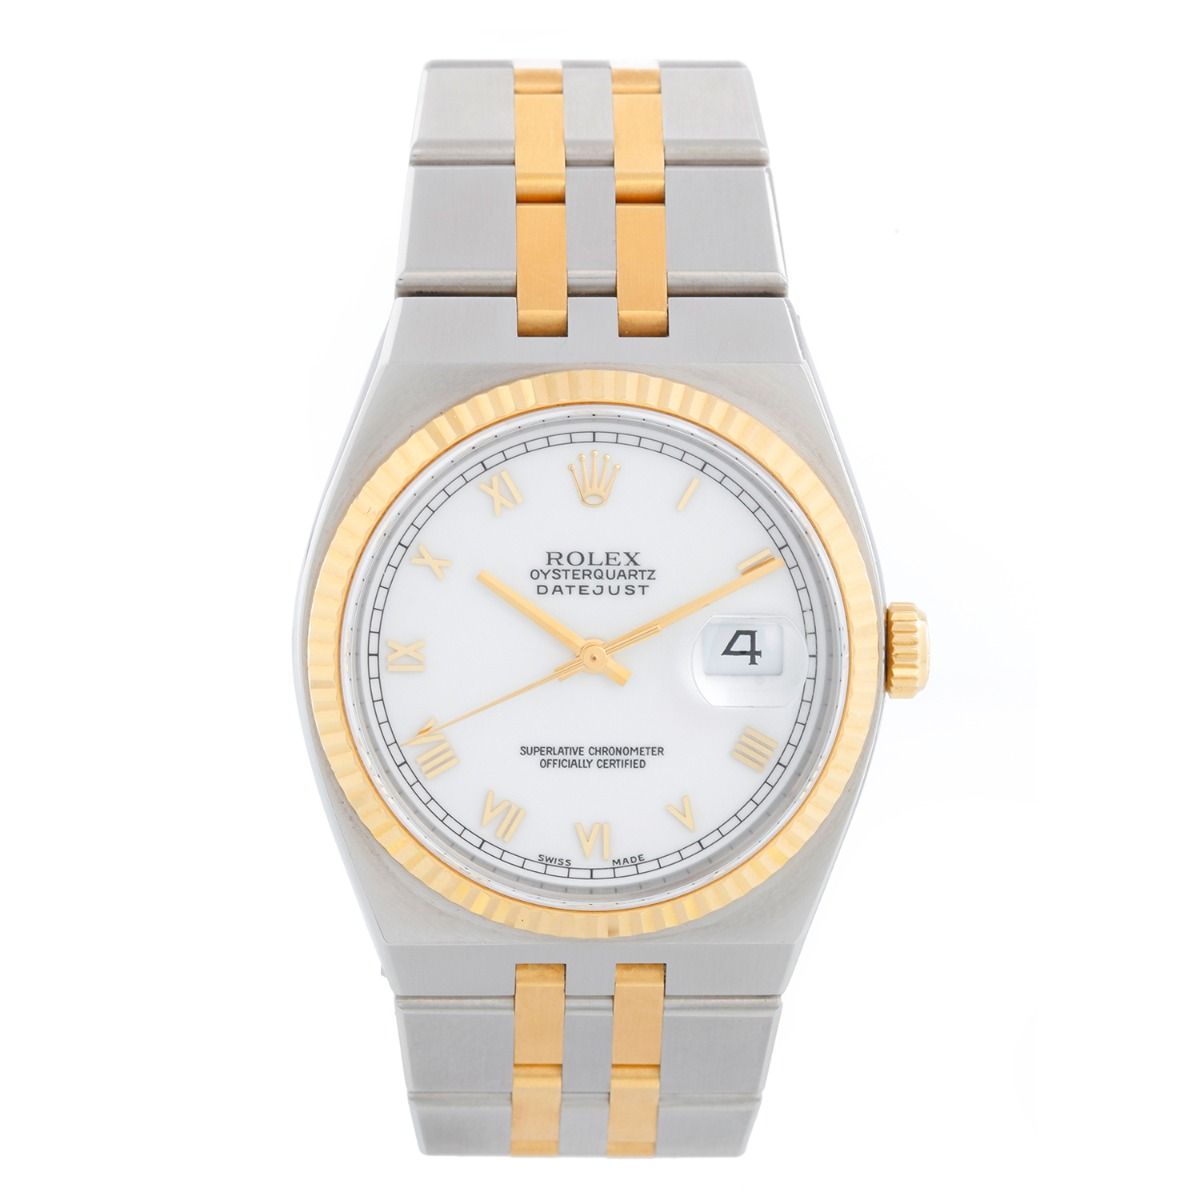 Indskrive fordom Kaptajn brie Men's Rolex Oysterquartz Datejust Diamond Watch 17013